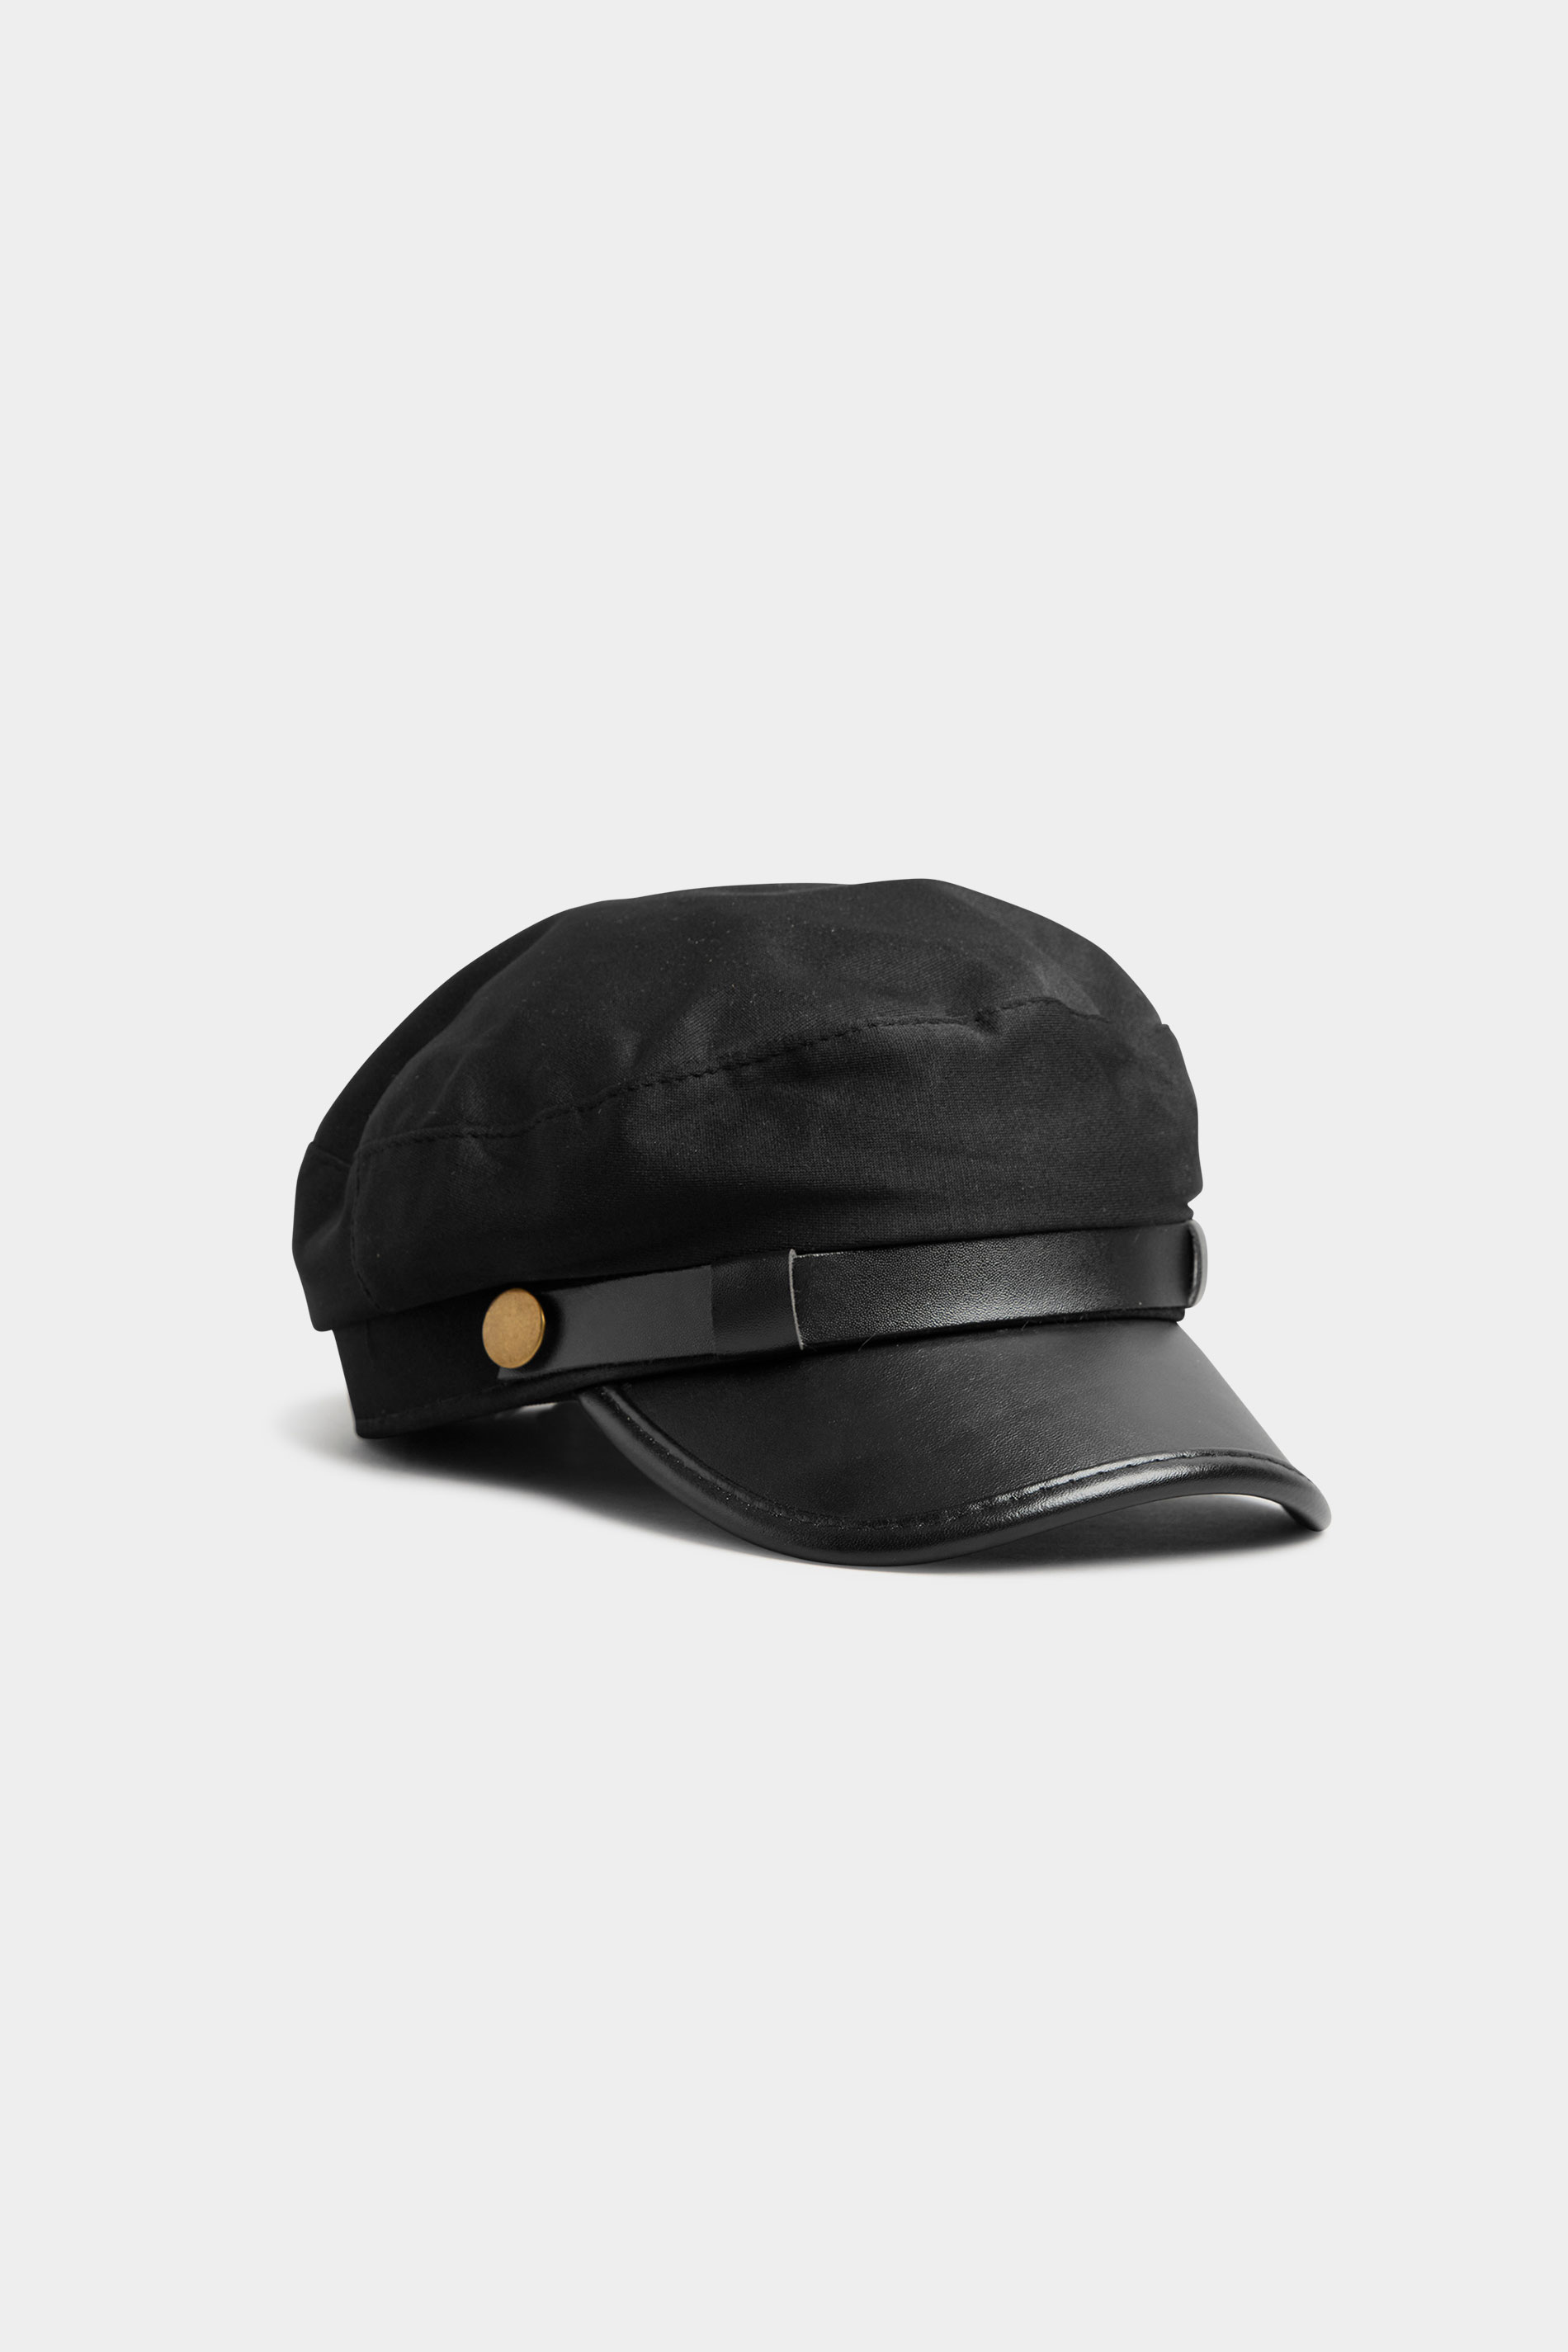 Black Faux Leather Peak Baker Boy Hat_A.jpg